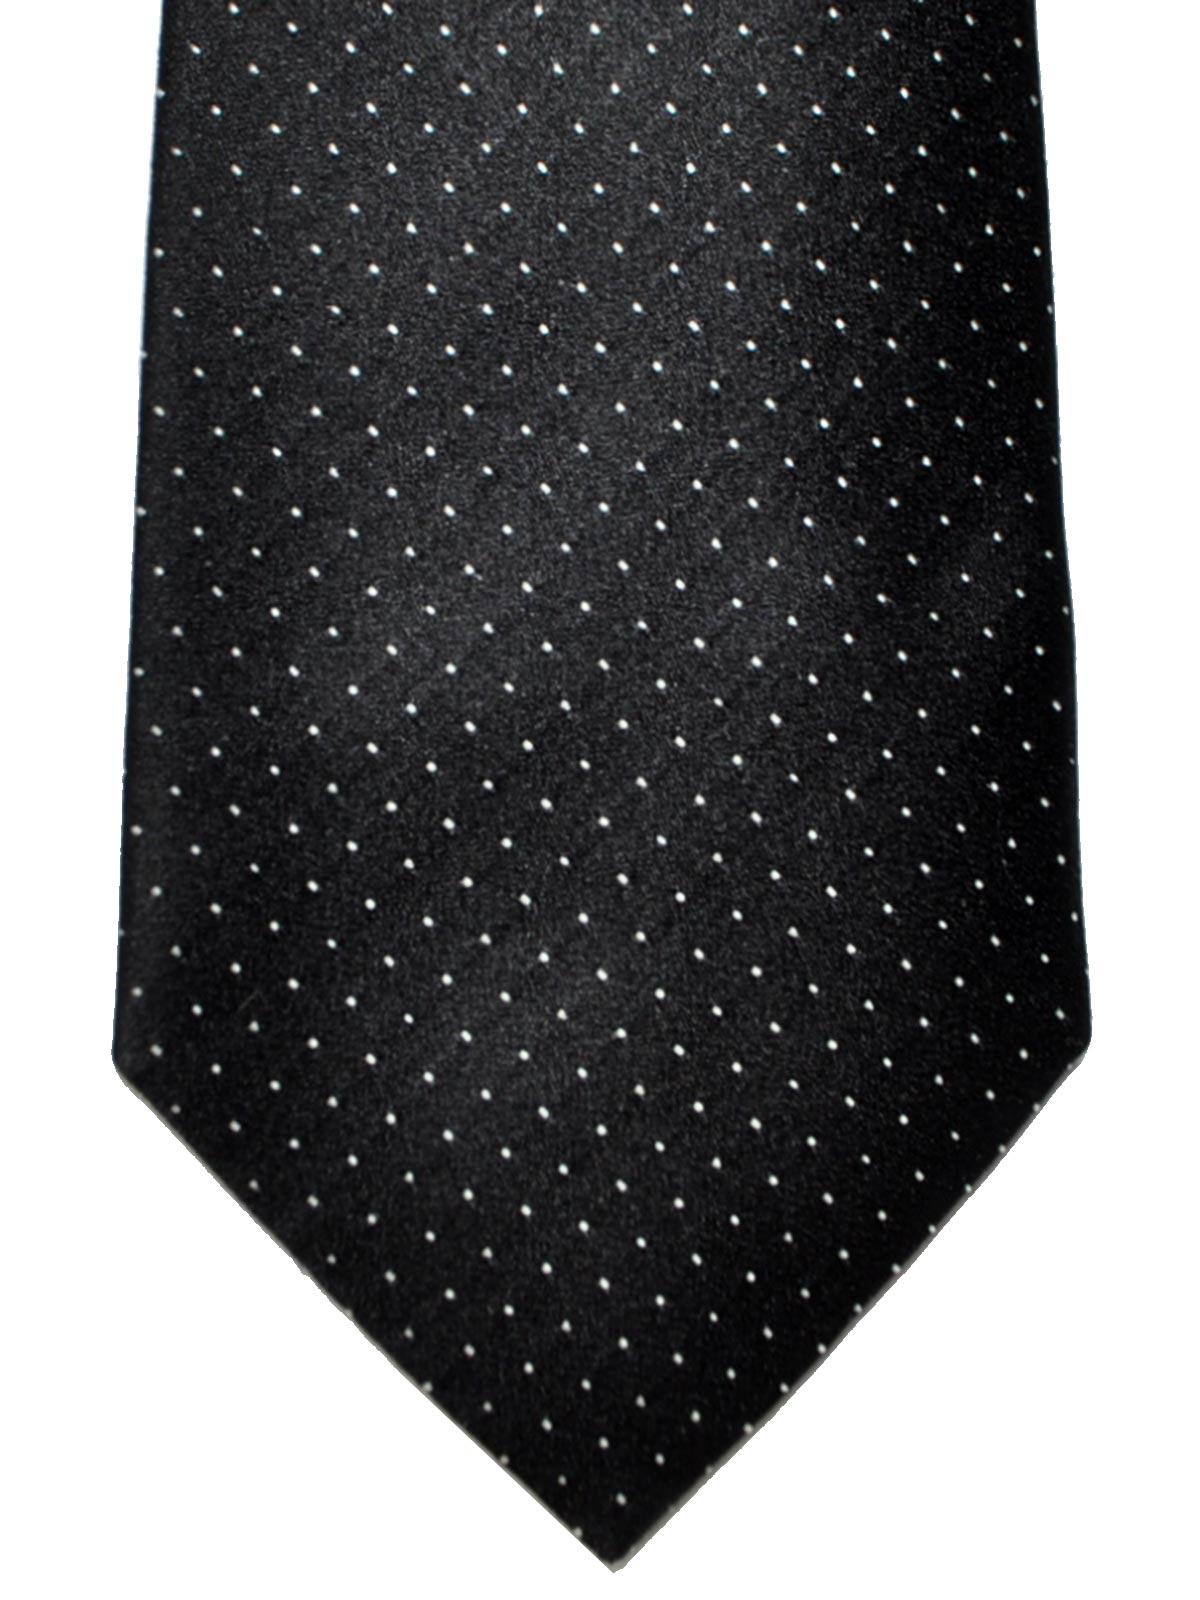 Emporio Armani Tie Black Silver Dots 